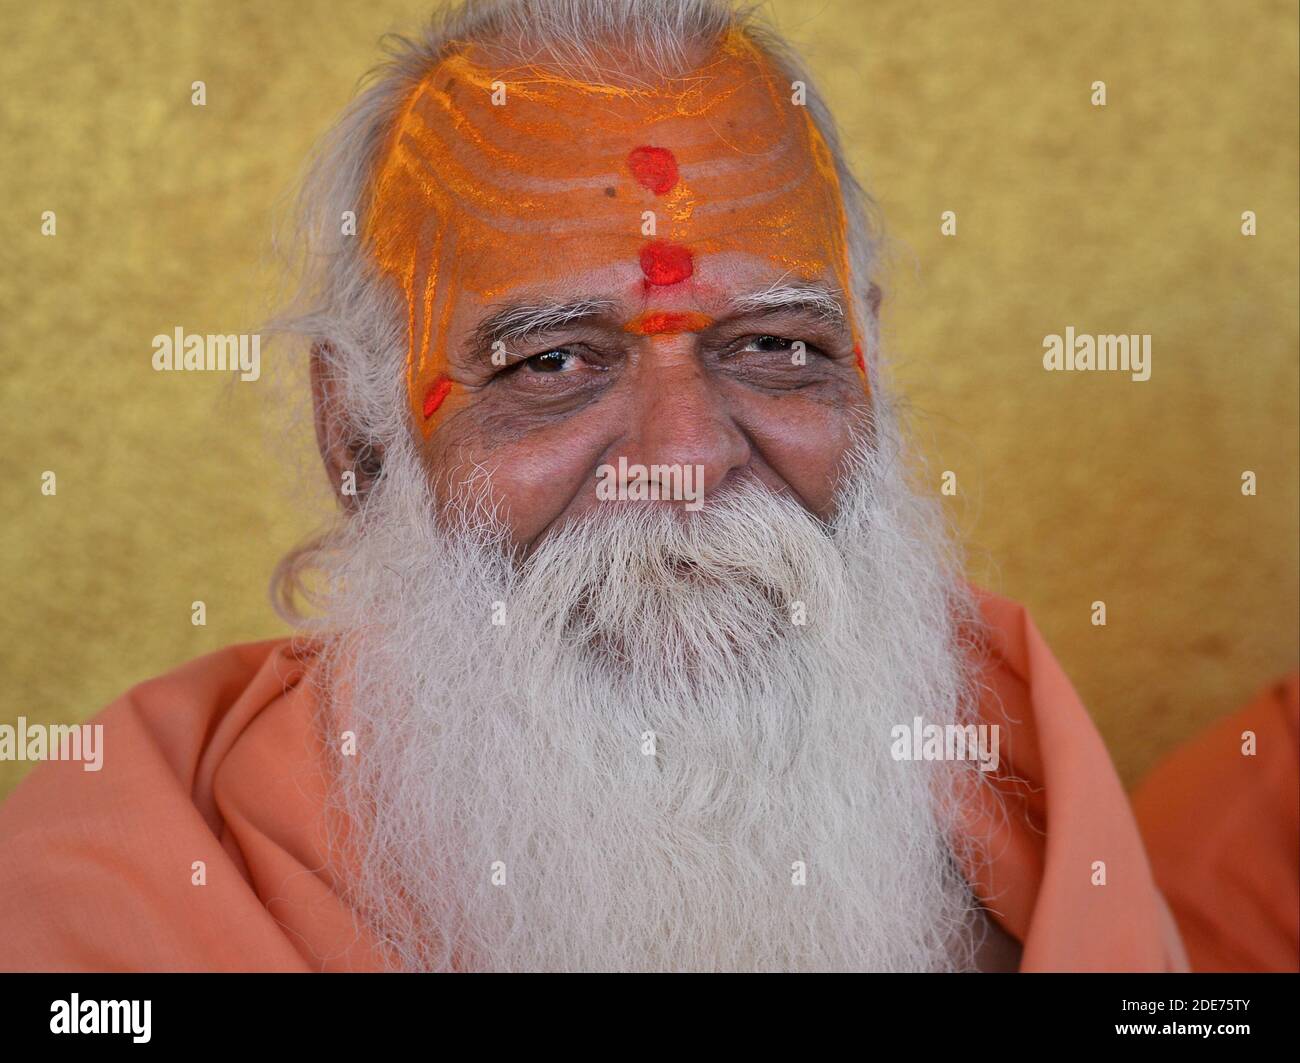 Très vieux Indien hindou Saint homme (sadhu, guru, baba) avec une barbe blanche épaisse et de la pâte de bois de santal jaune sur son front élevé pose pour l'appareil photo. Banque D'Images